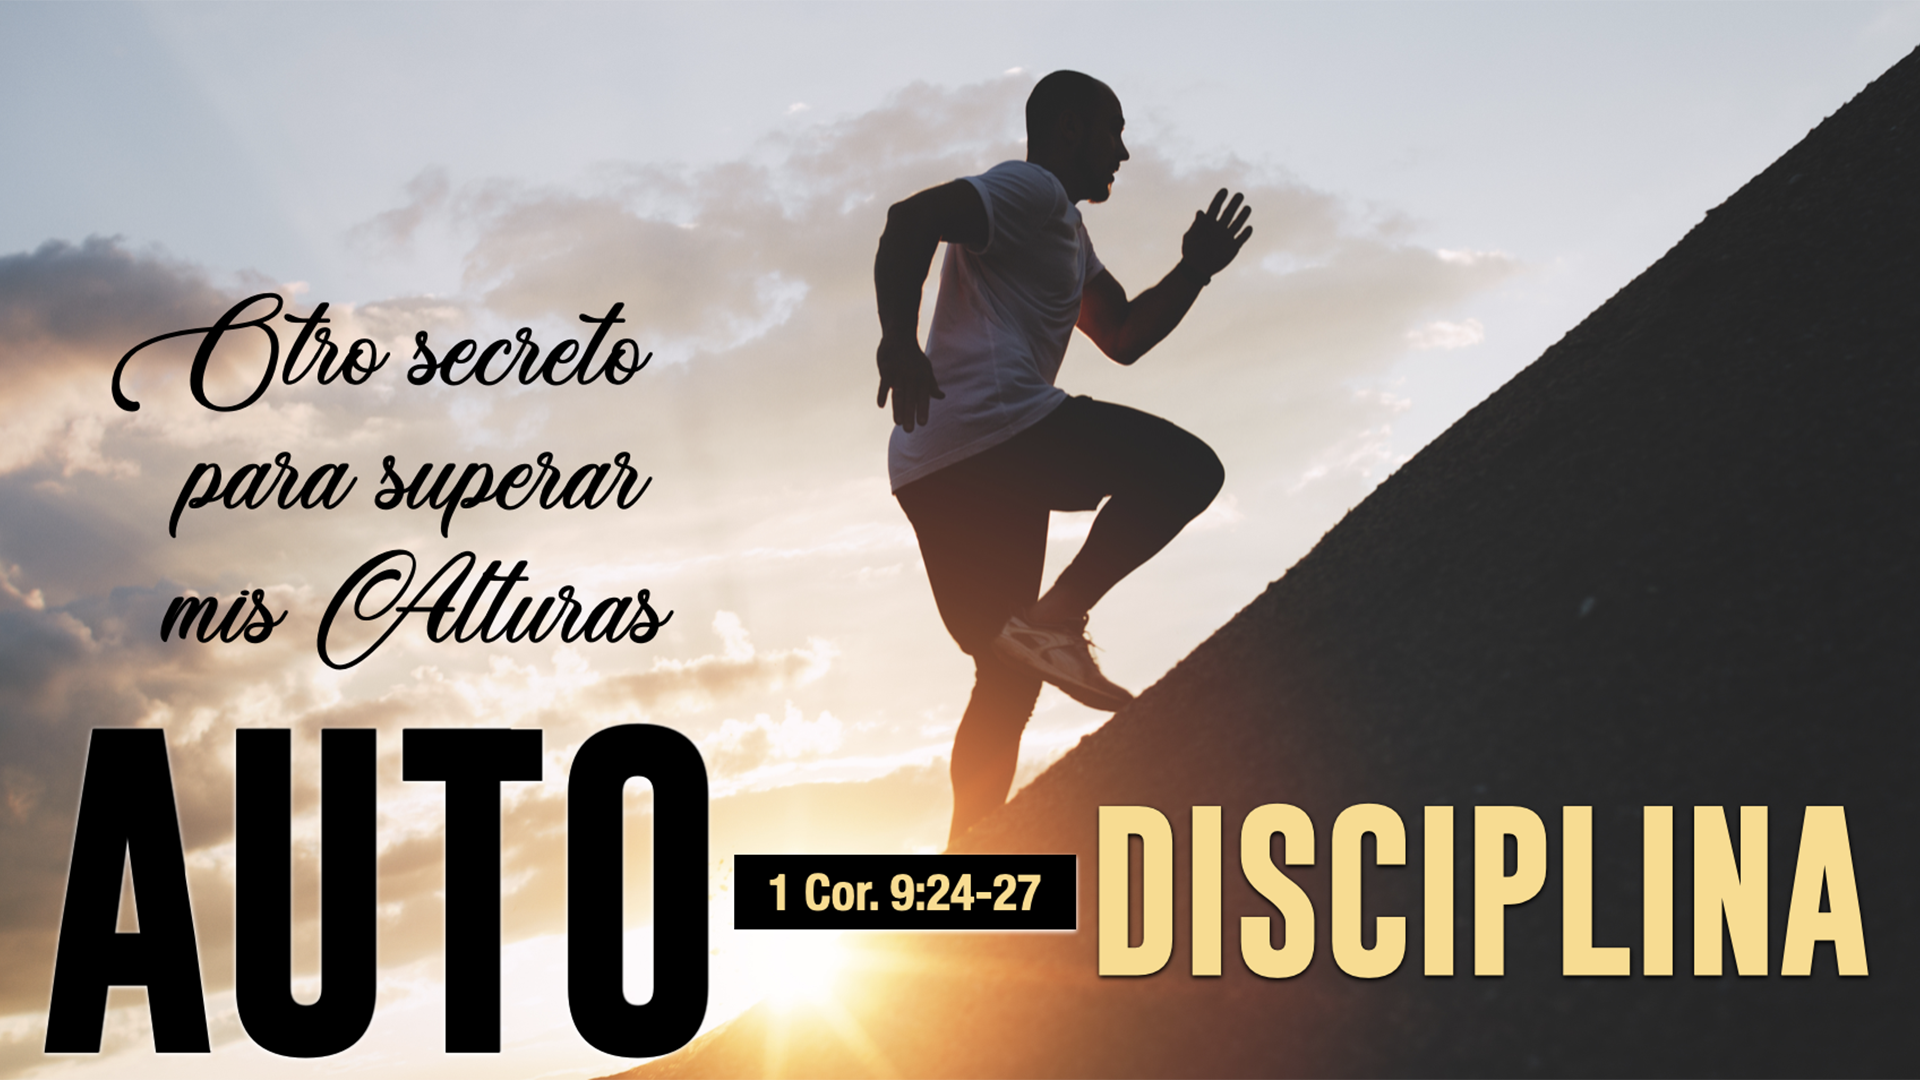 Otro Secreto: Autodisciplina